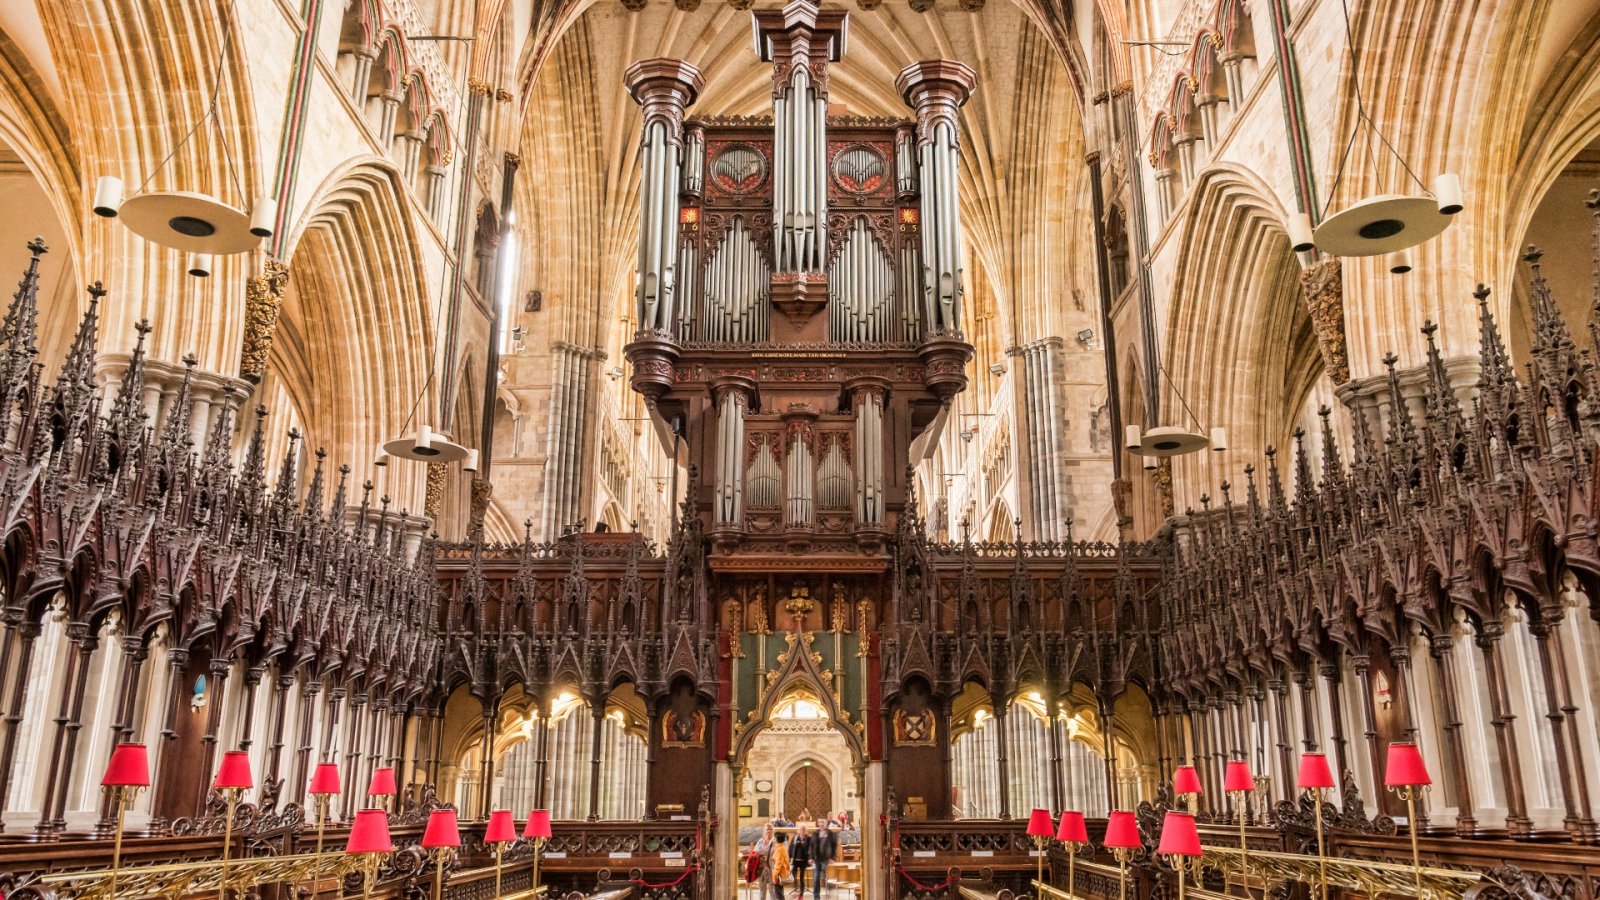 Entdecken Sie diese fantastischen Fotografien von Kircheninnenräumen im ländlichen England